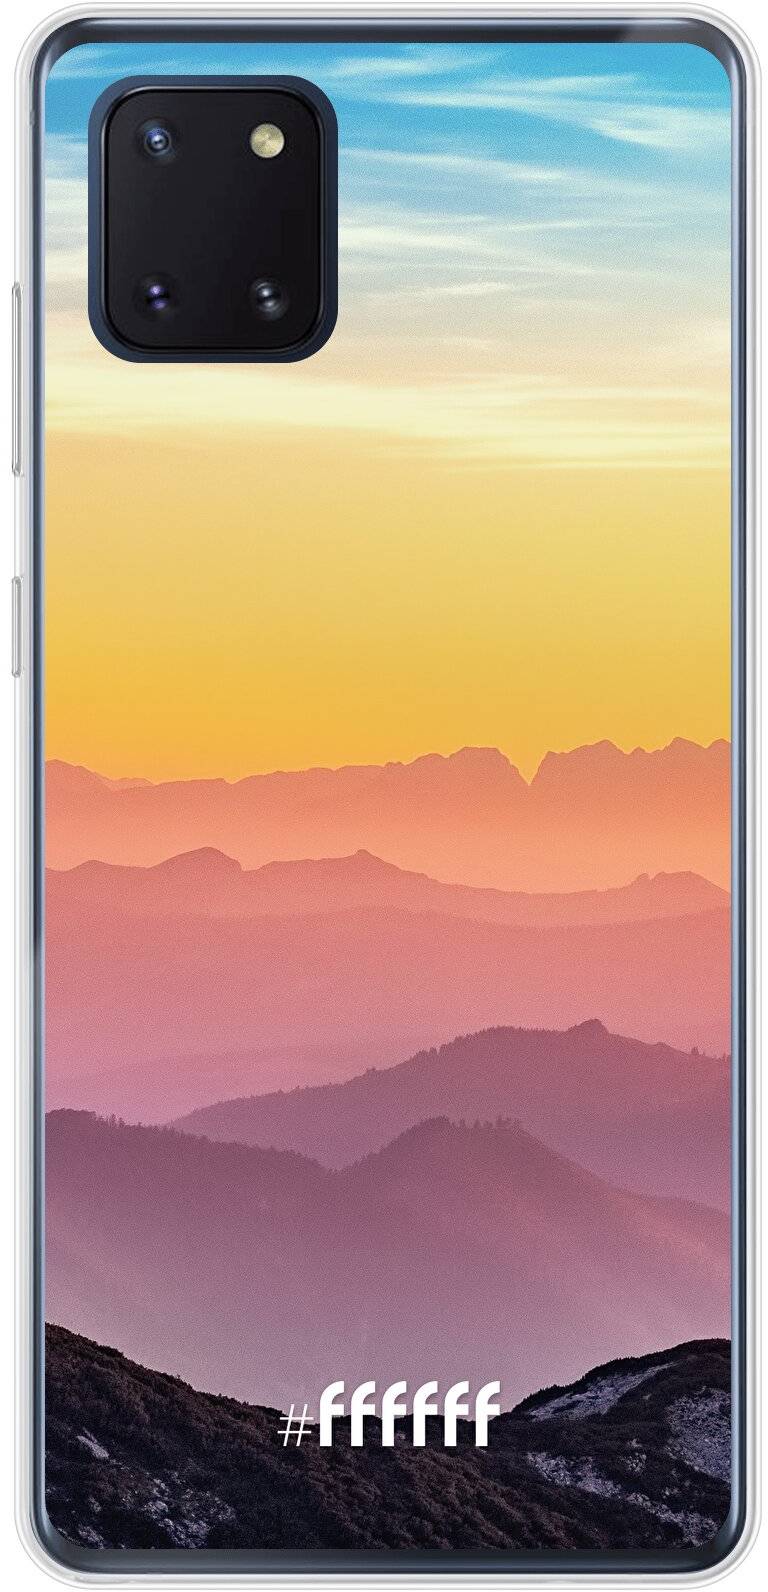 Golden Hour Galaxy Note 10 Lite